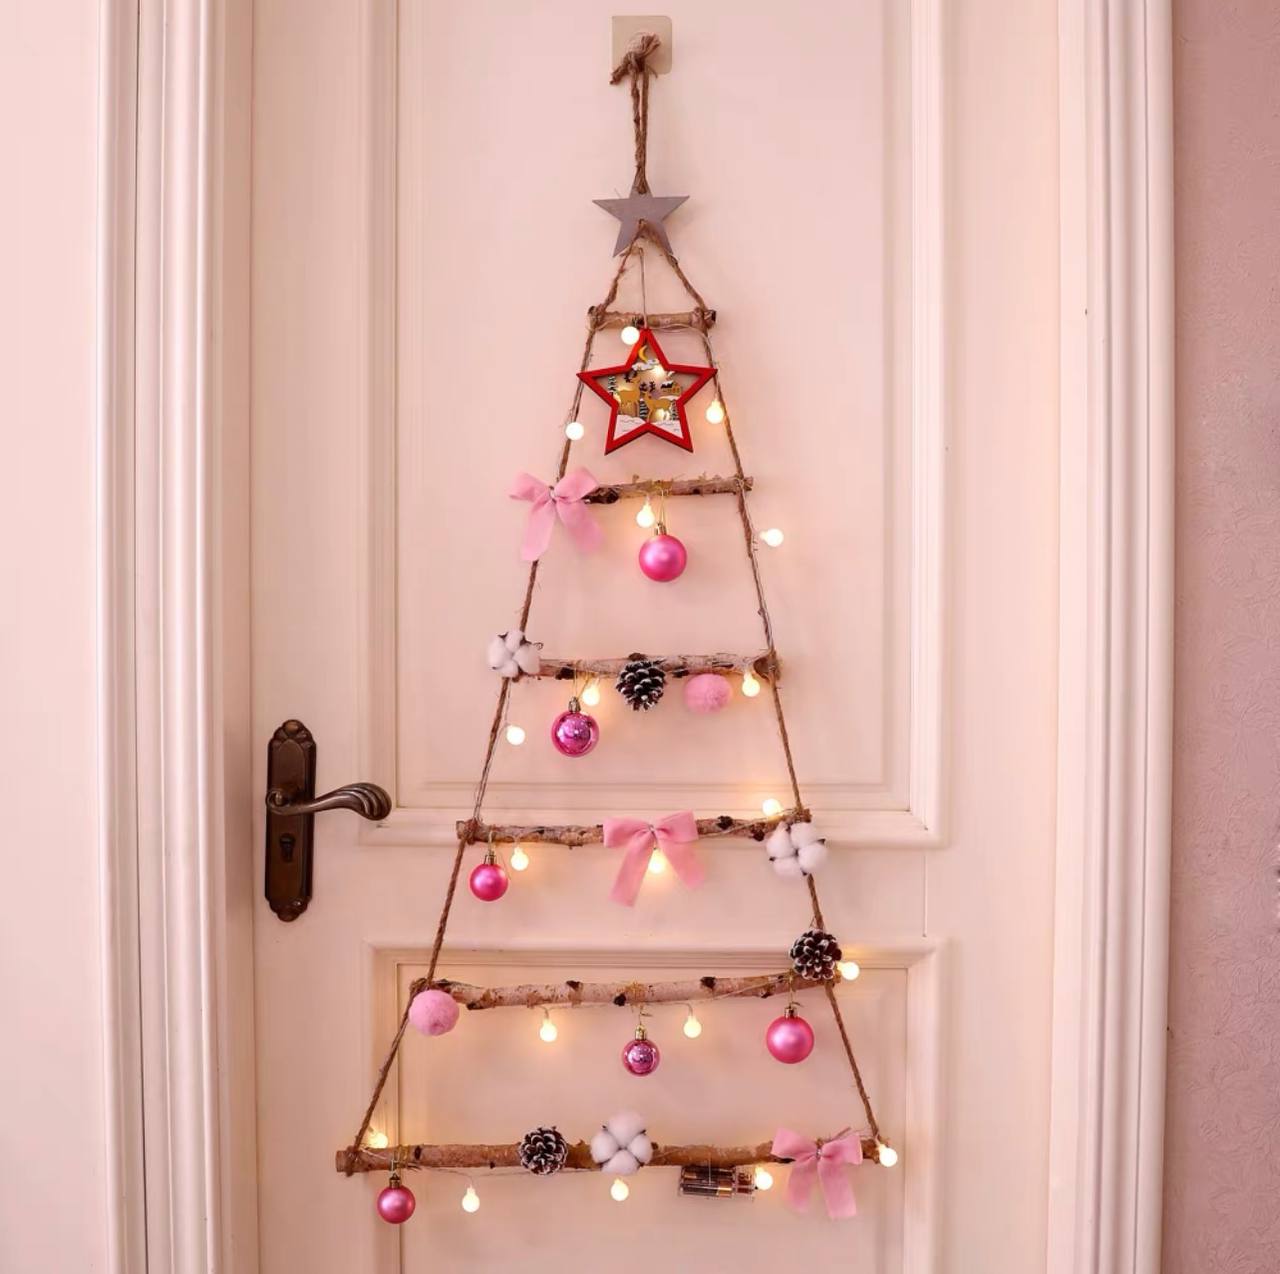 House Hanging Christmas Tree